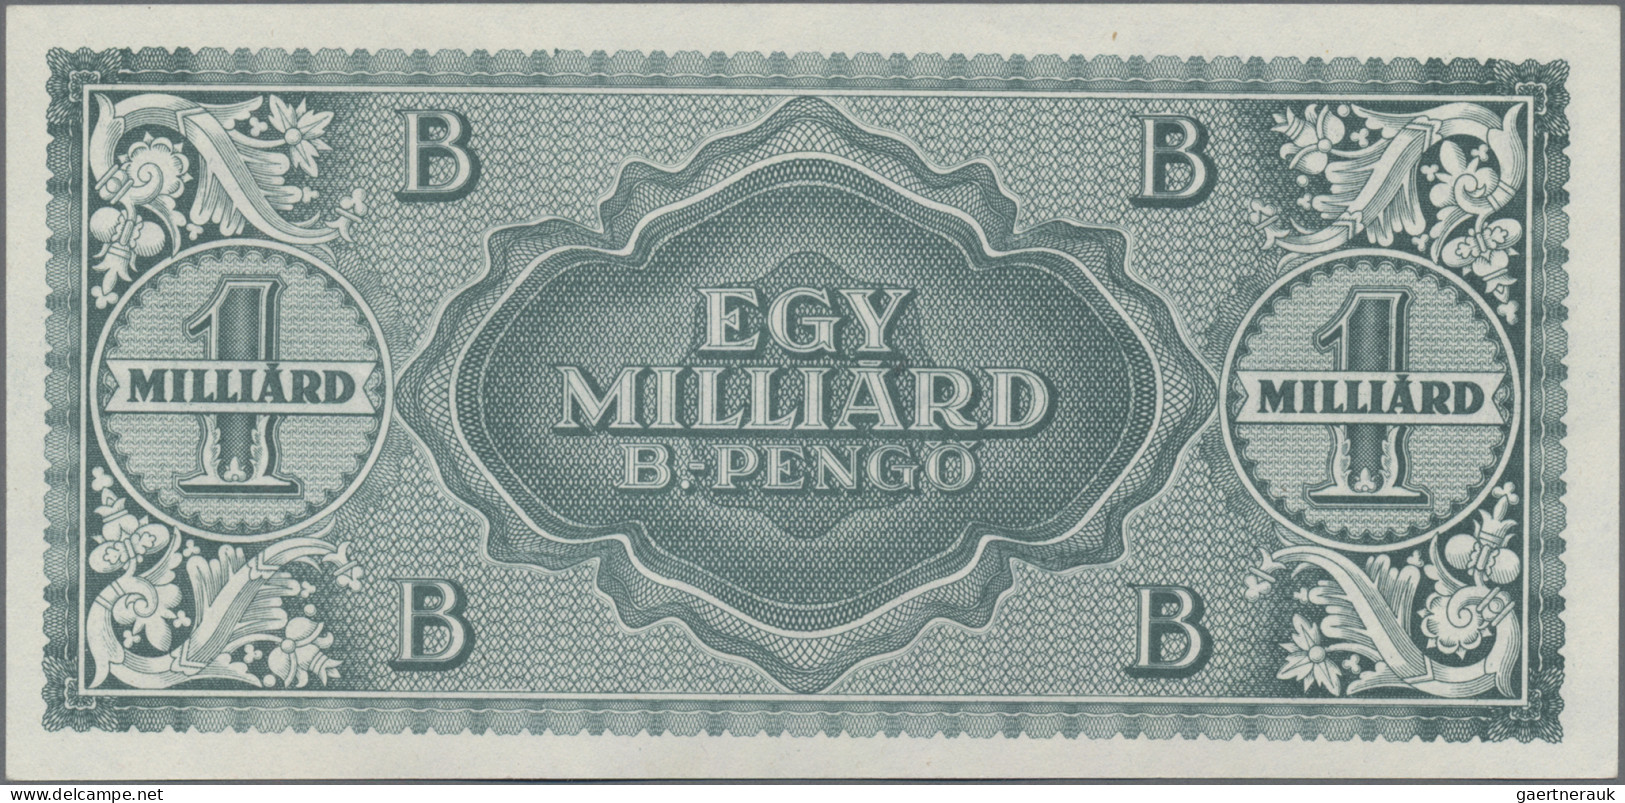 Hungary: Magyar Nemzeti Bank Egymilliard (1.000.000.000) B.-Pengő (=1.000.000.00 - Hungary